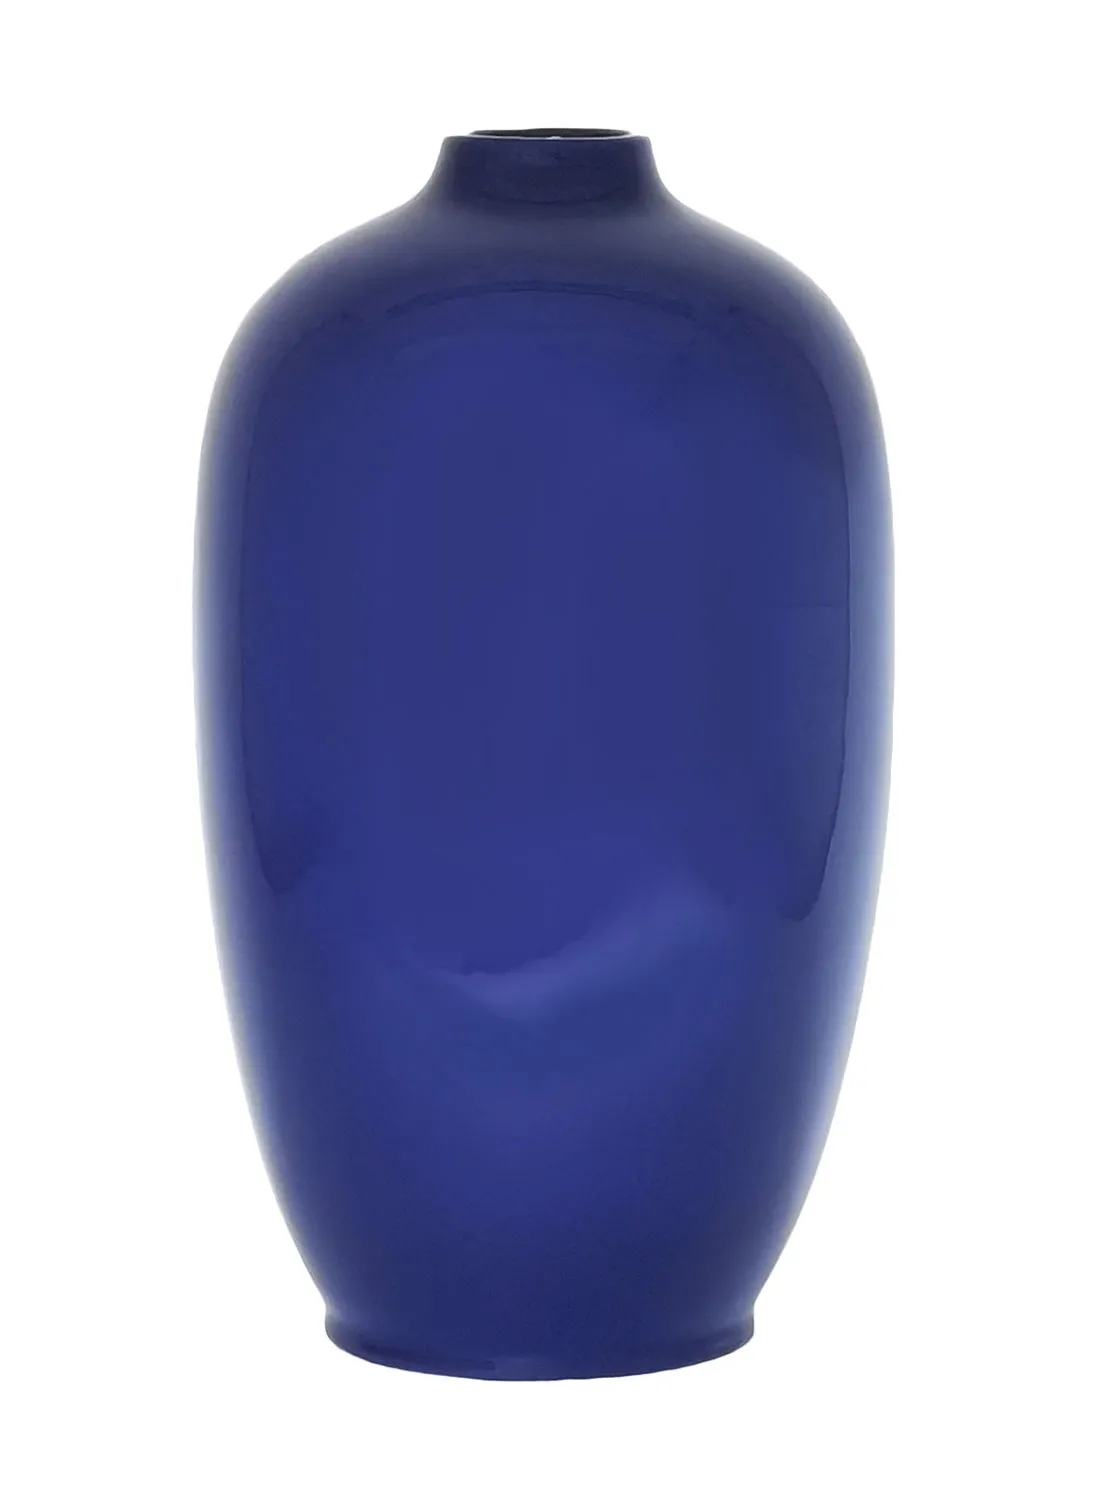 مزهرية خزفية كلاسيكية ذات شكل فني مذهل وفريد ​​من نوعه مواد ذات جودة فاخرة لمنزل أنيق ومثالي N13-010 أزرق 24.5 × 42 سم